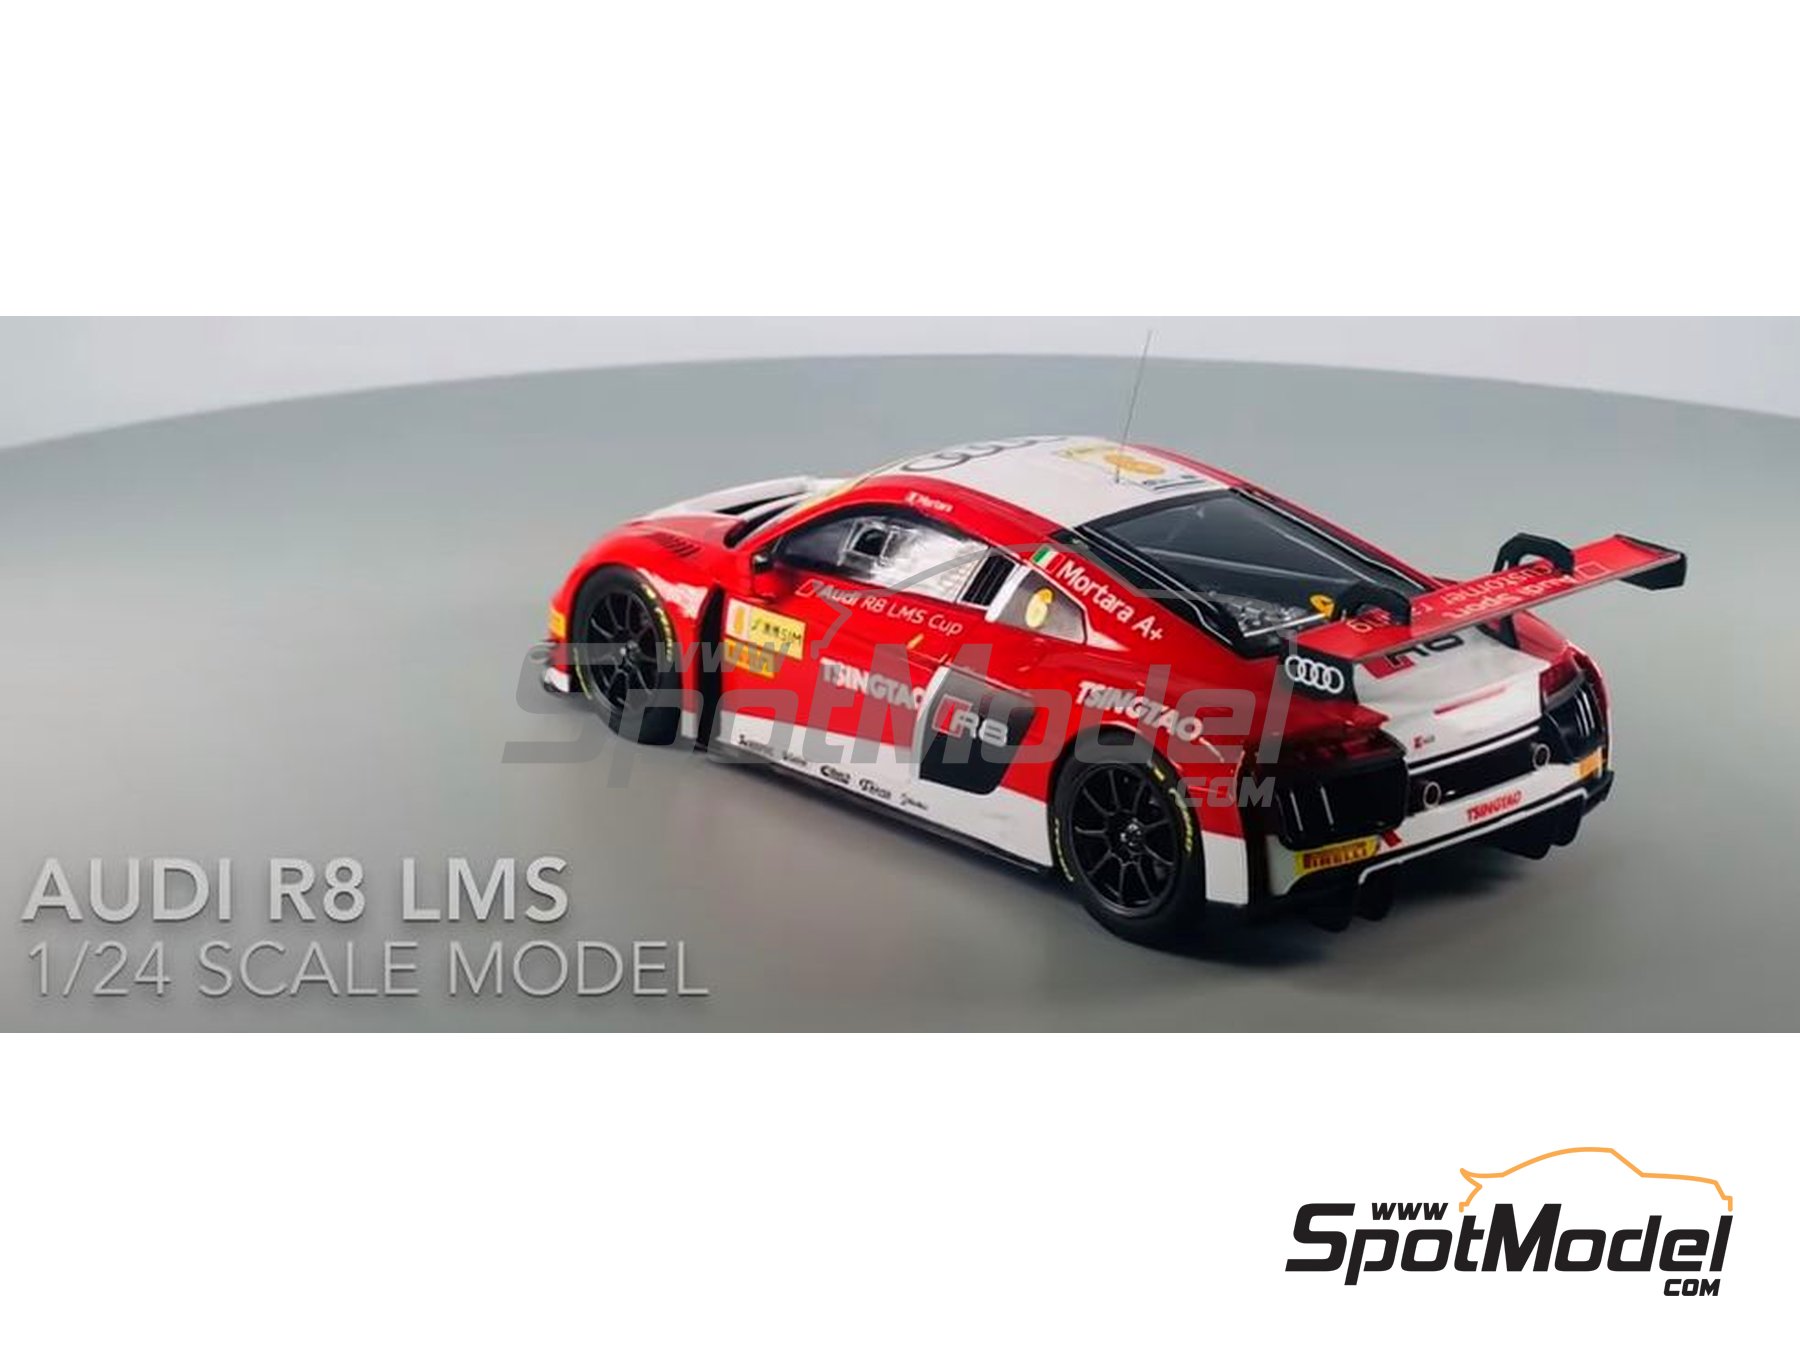 Platts/NUNU 1/24 Racing Series Audi R8 LMS GT3 2015 FIA GT3 World Cup Model 